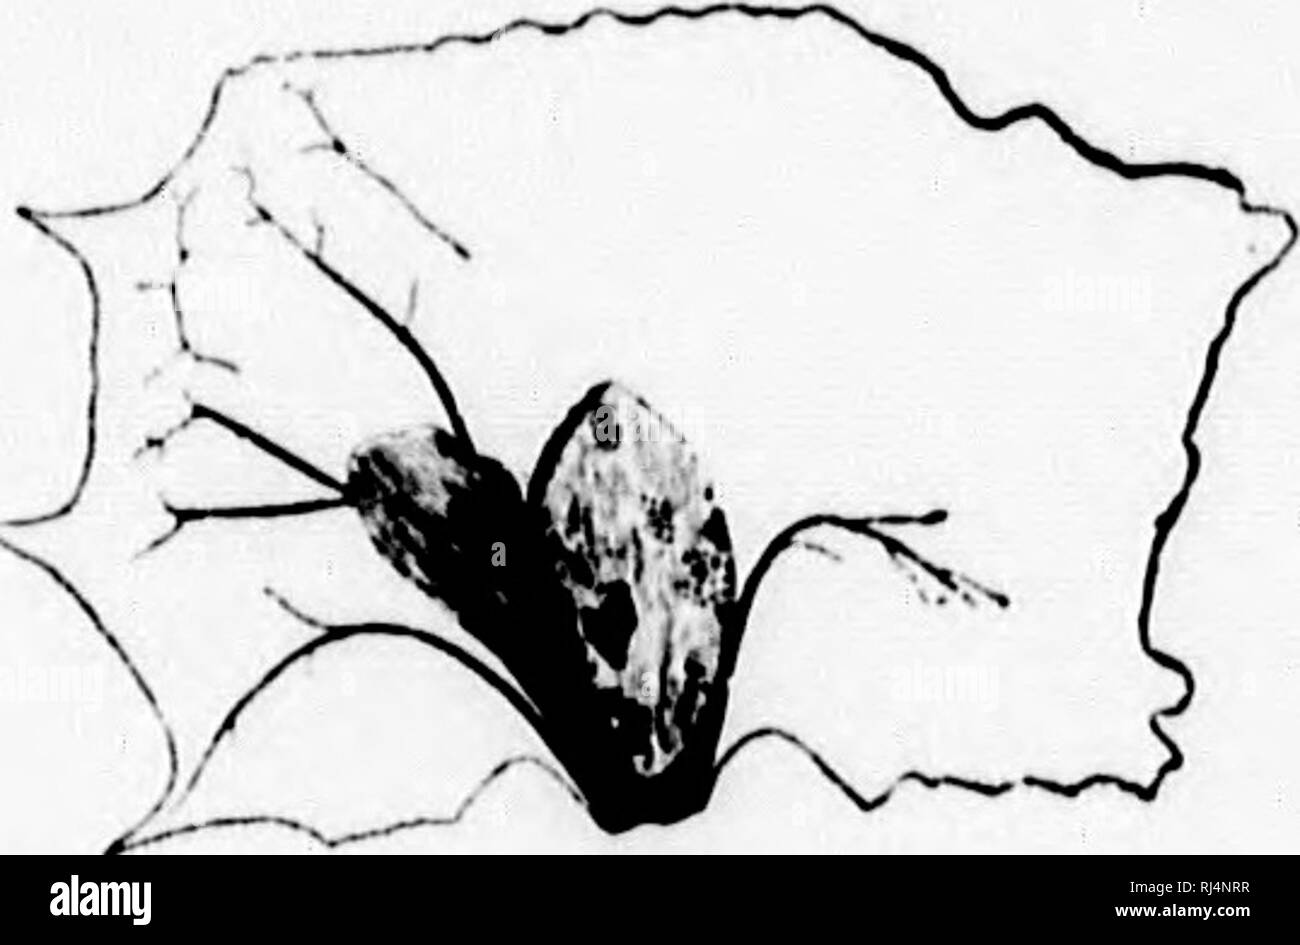 . Su piante fossili dal Similkameen Valley e in altri luoghi del sud della parte interna della Columbia Britannica [microformati]. Paleobotanica; Paléobotanique. Piante fossili FKOM THK SIMILKAMKHN VAI.LKY. 89 Carpolilhes ilentulus, Penhallow. (Fig. 26.) esemplari in Peter Redpath Museo dall'indagine geologica collectious ol' 1888. Questi campioni sono stati ottenuti dal ceppo vicino lago, e sono incorporati in un ler- ruginous matrice di argilla. Essi sono ovviamente alato di frutti o semi. Nessuno di essi sono perfettamente conservati, ma da tre dei più perfetti i caratteri riportati di seguito sono stati ottenuti:-. l'i&lt Foto Stock